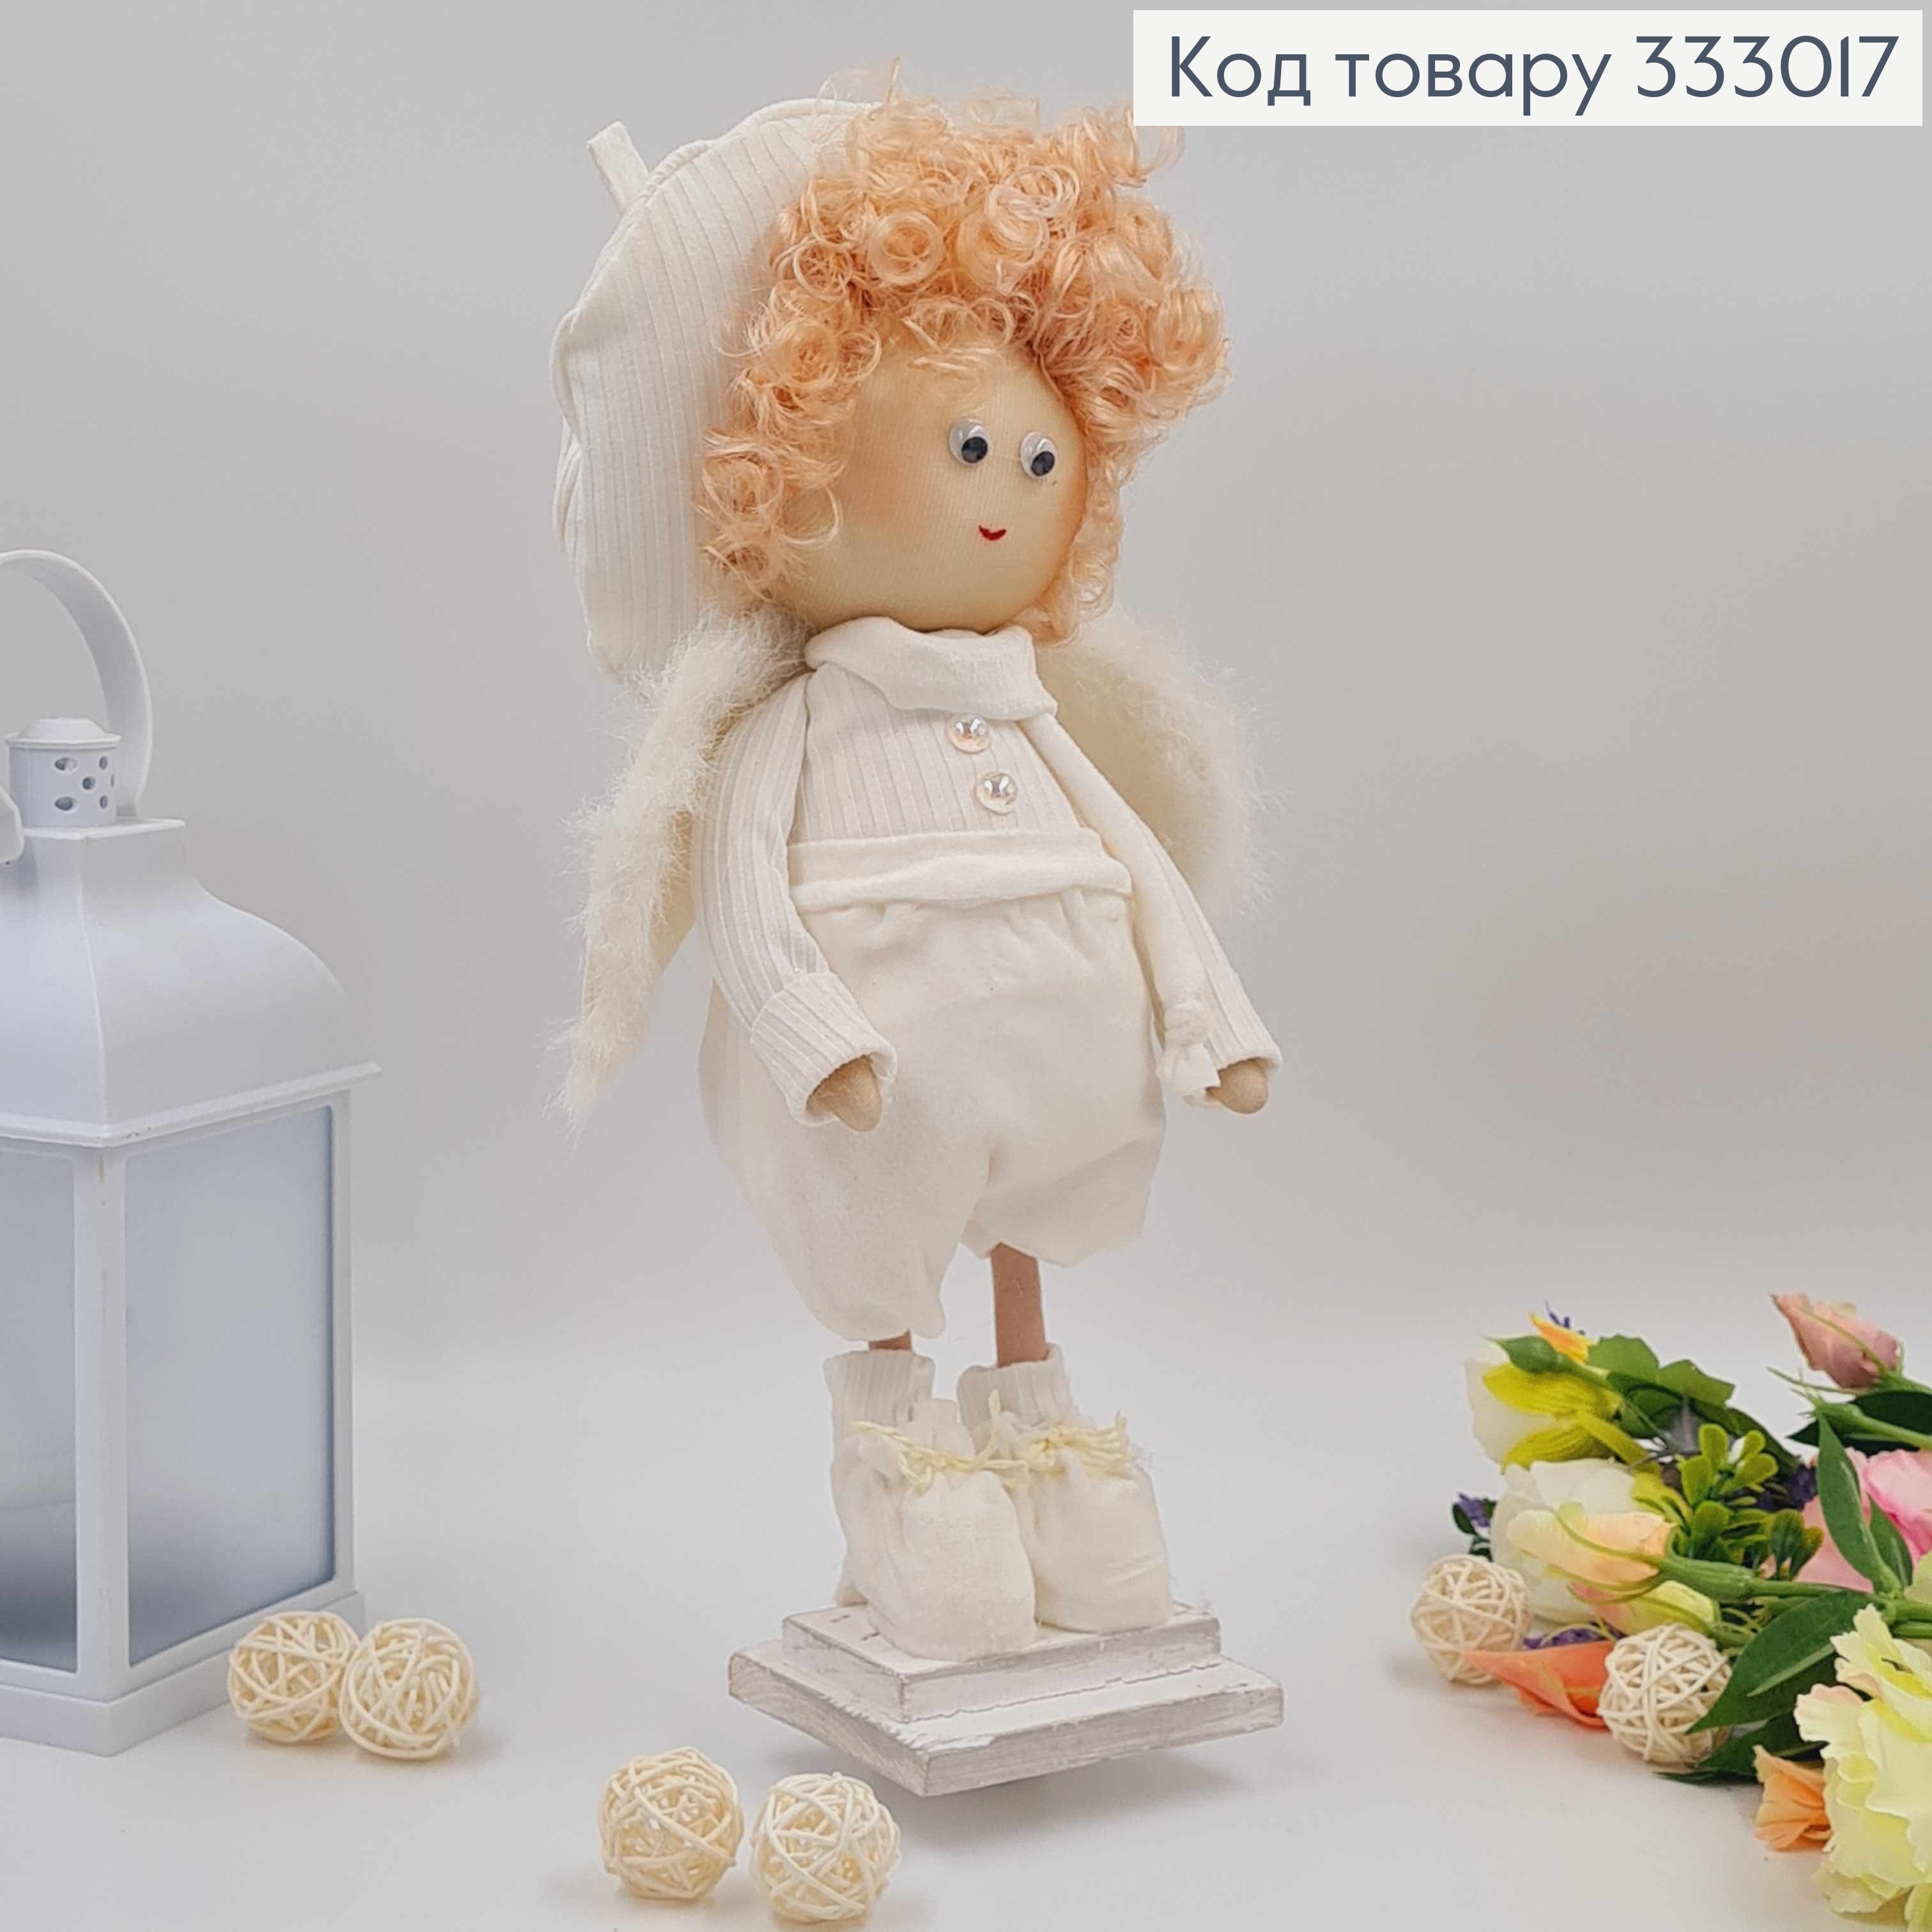 Лялька АМУРЧИК в береті, молочний колір, висота 35см,ручна робота, Україна 333017 фото 2